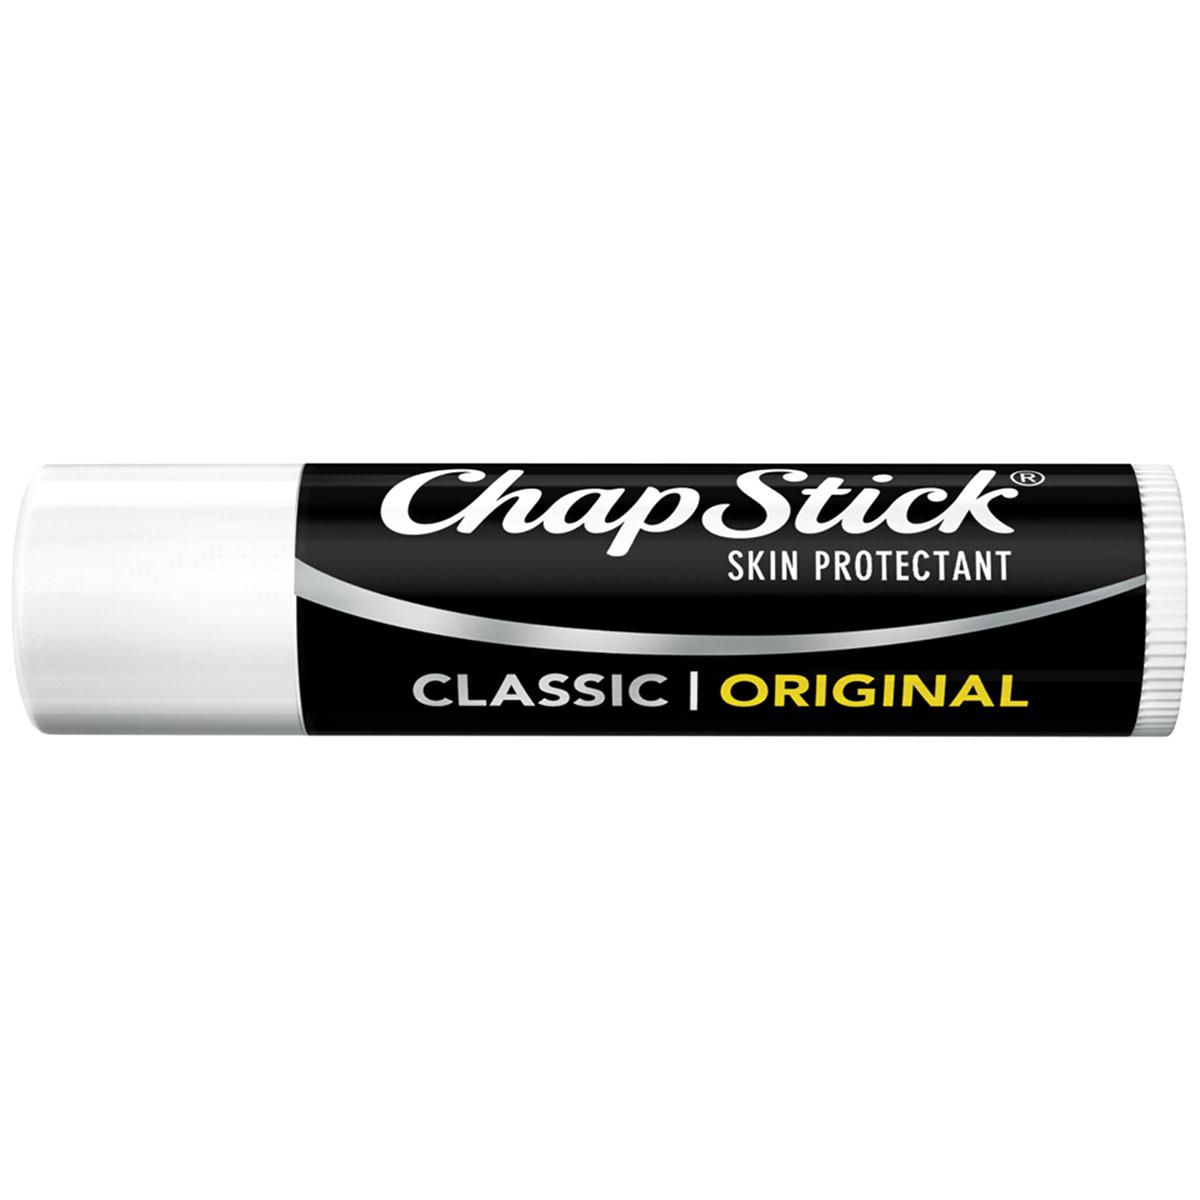 Chap Stick